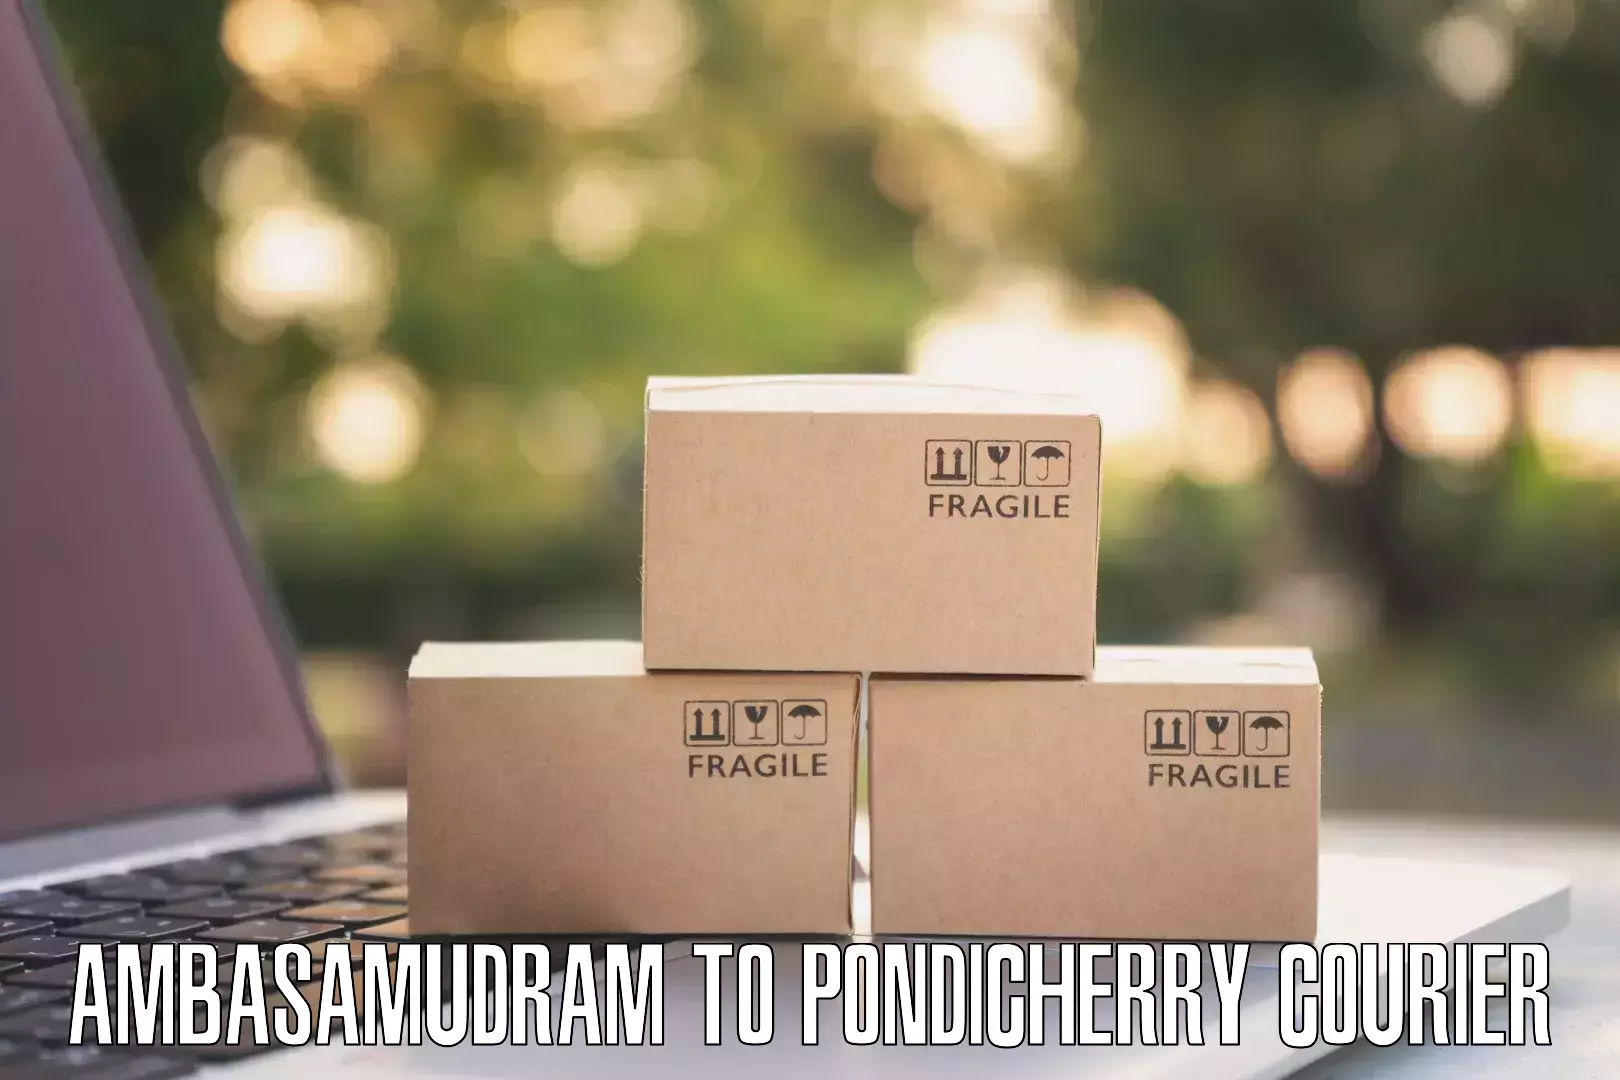 Urban courier service Ambasamudram to Pondicherry